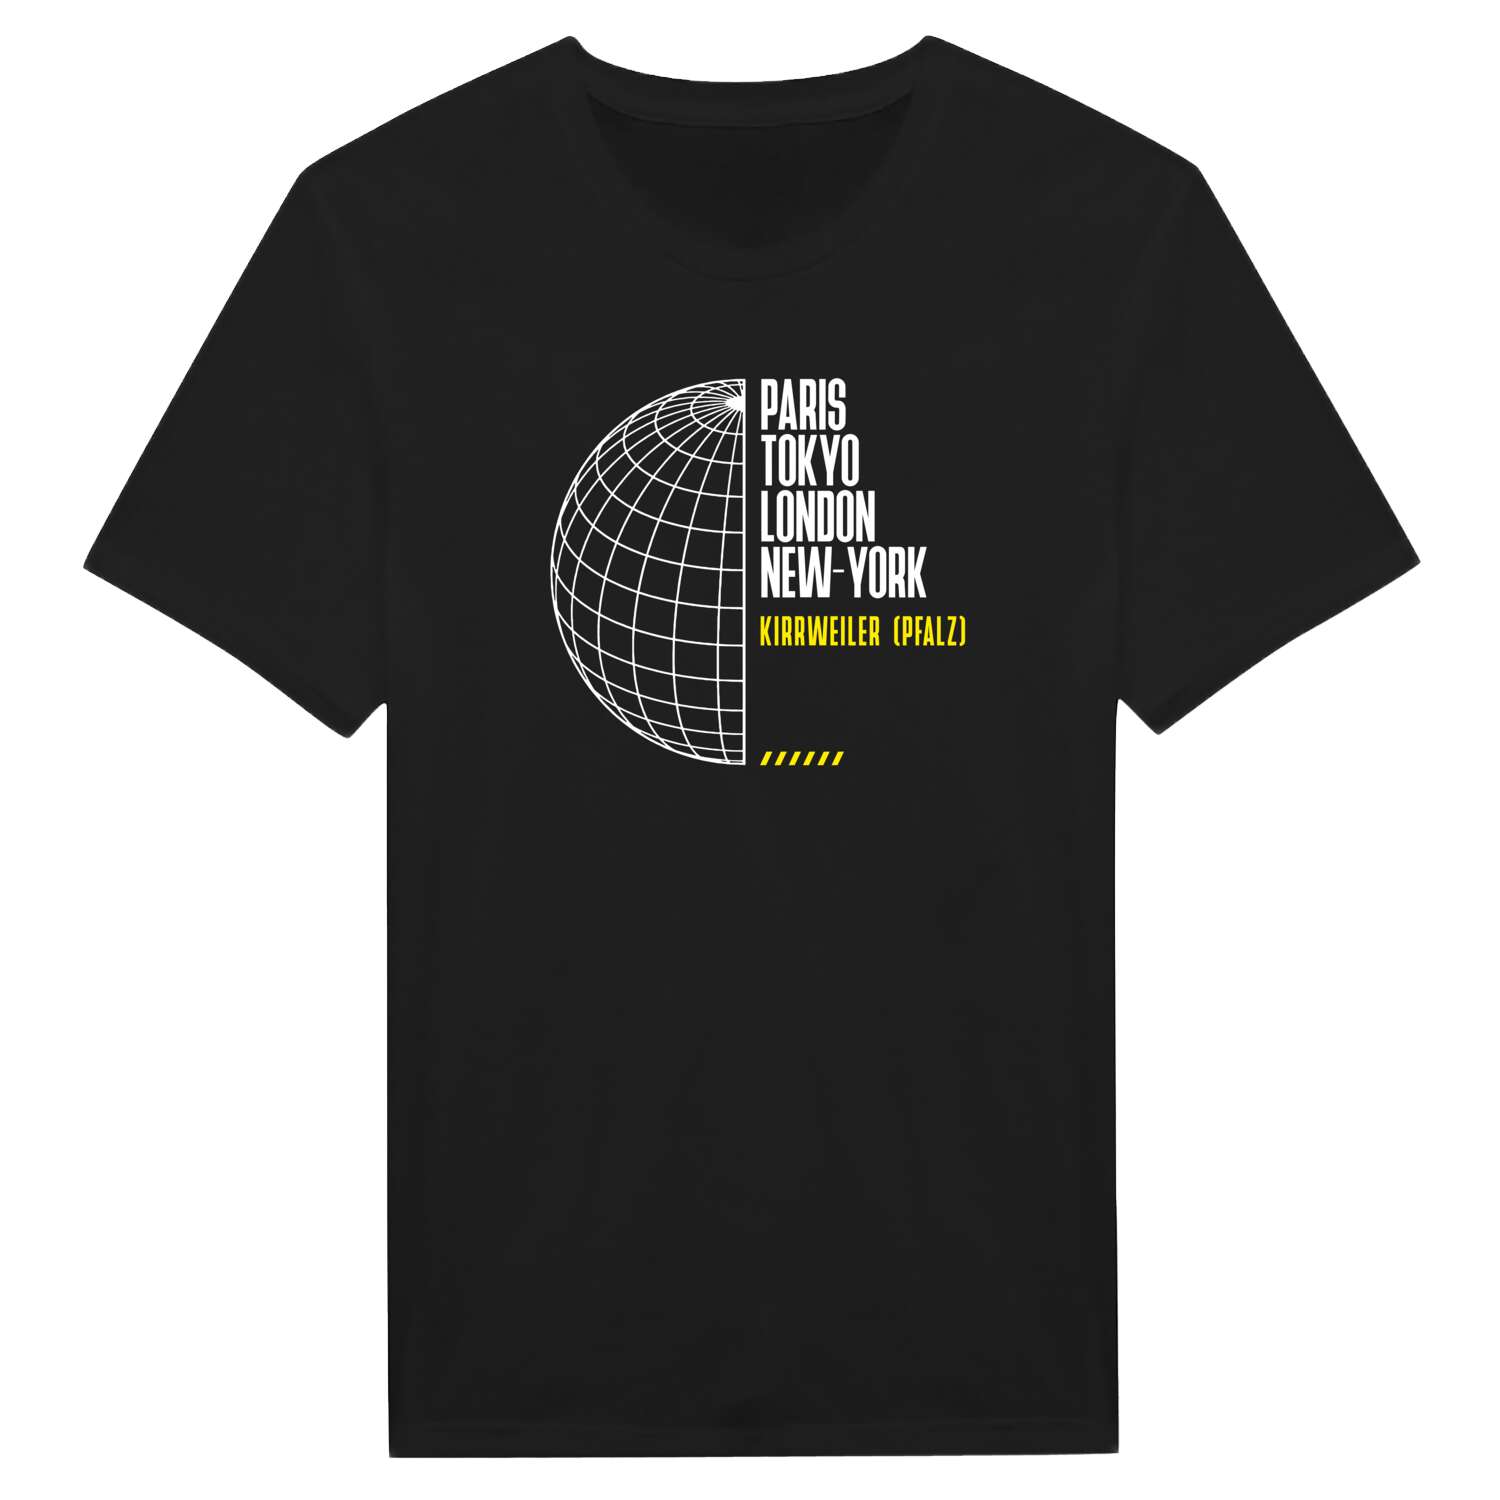 Kirrweiler (Pfalz) T-Shirt »Paris Tokyo London«